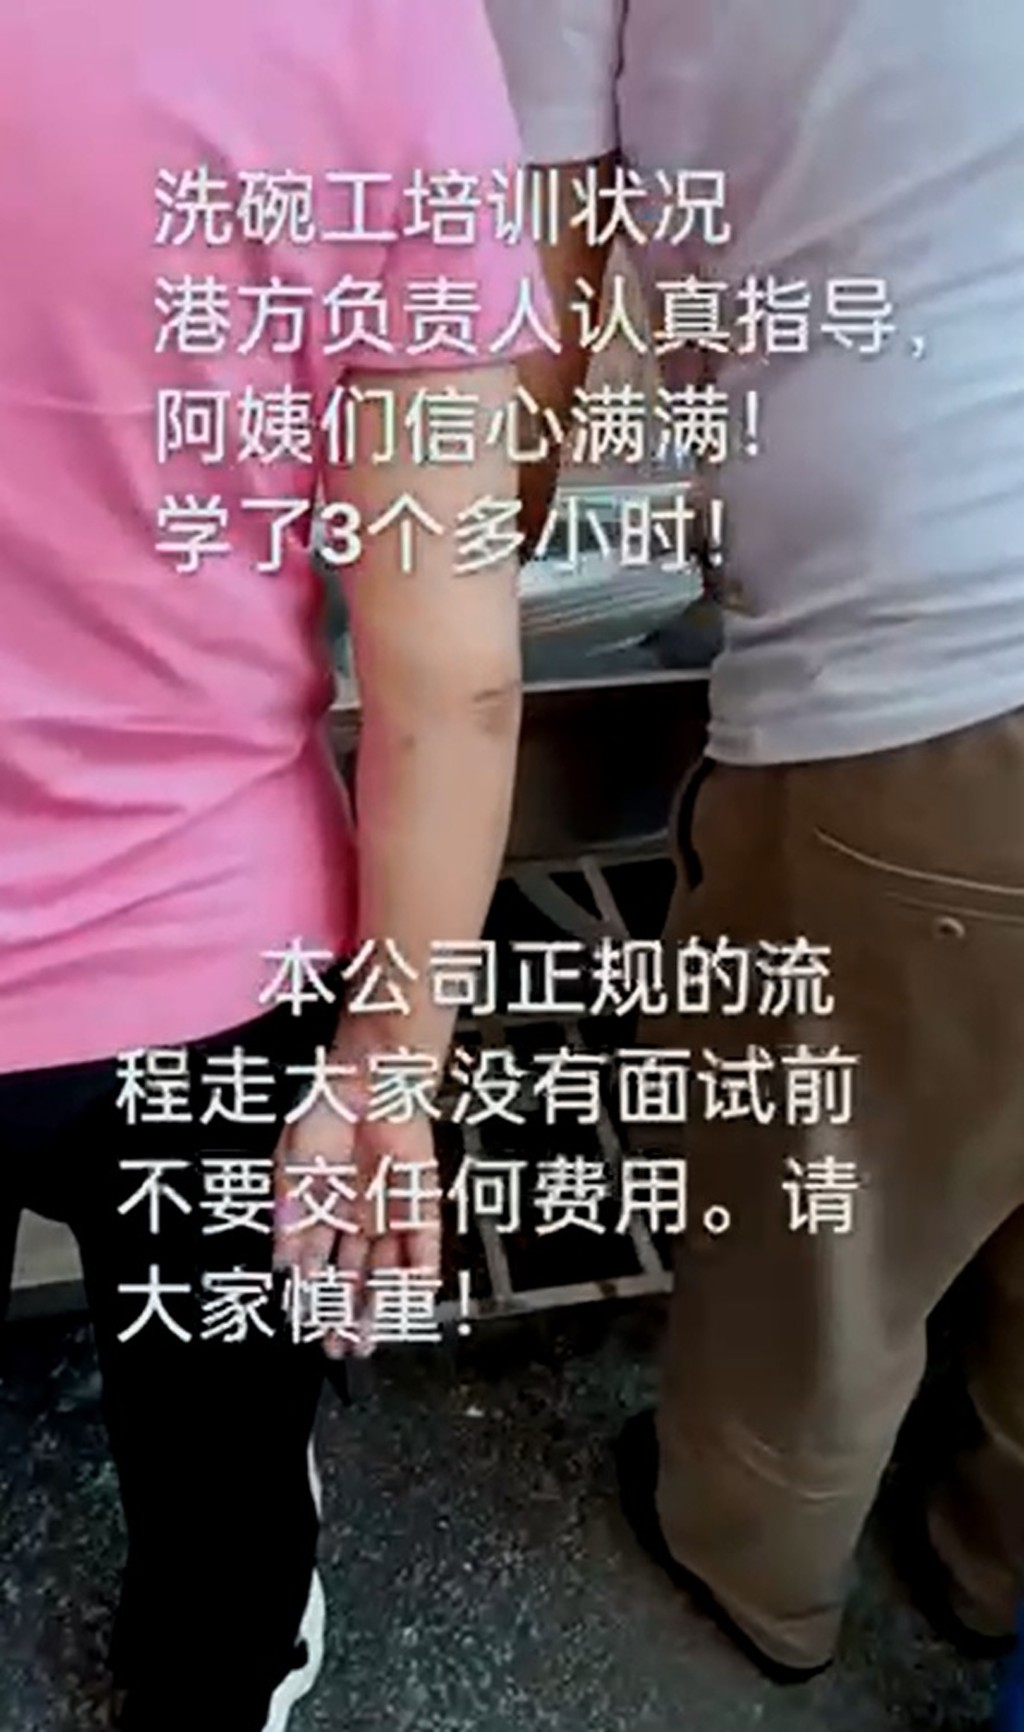 深圳中介公司发放短片，指会教导准备赴港工作的内地人如何在食店洗碗。